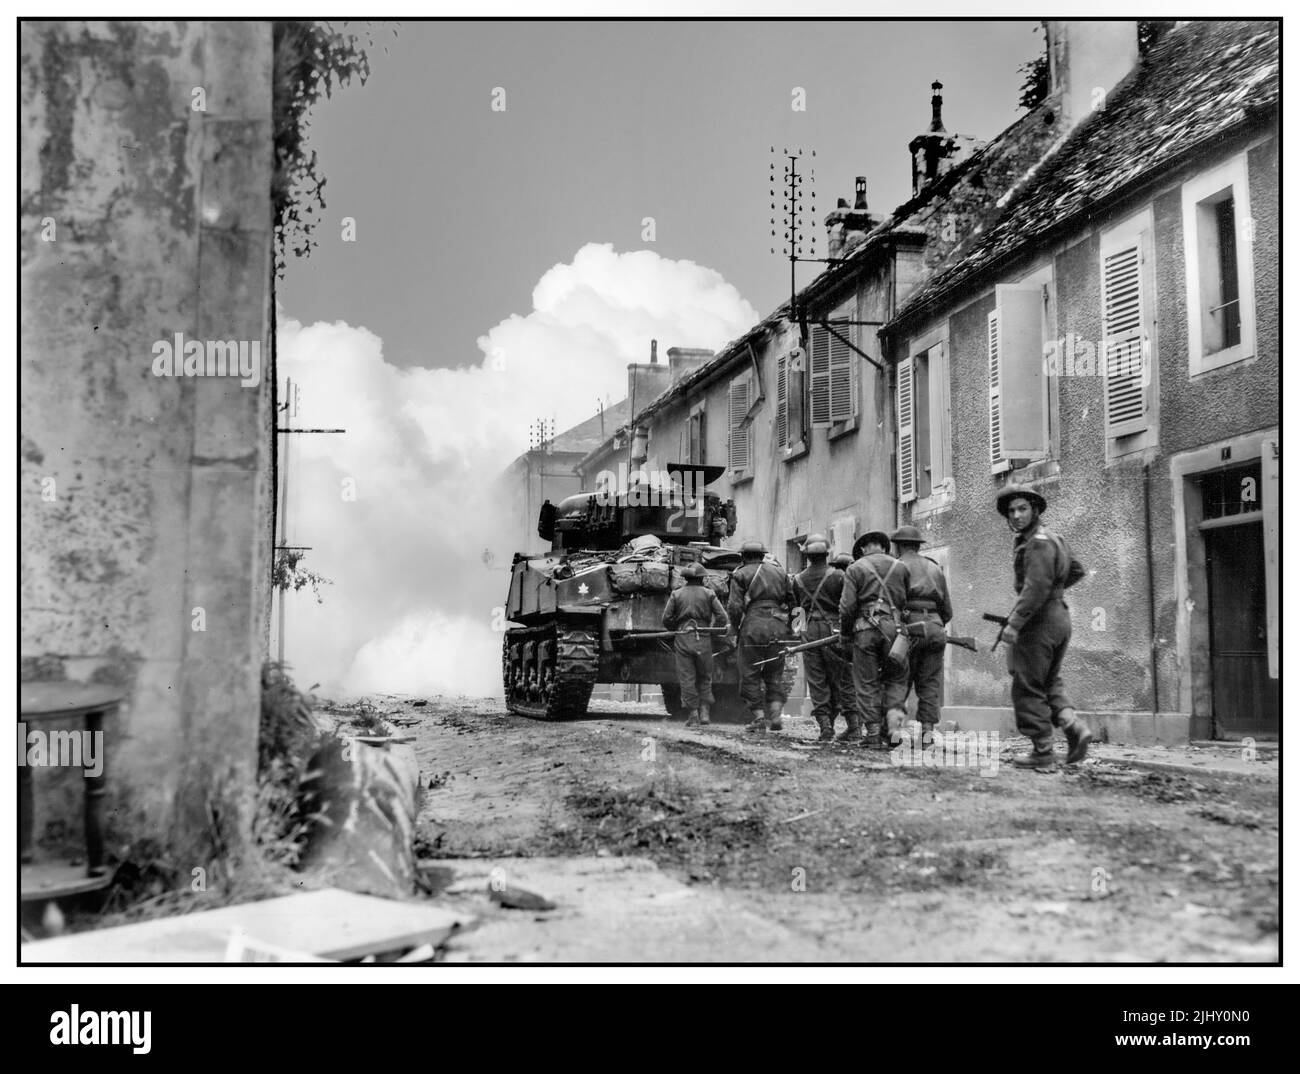 D-DAY WW2 Kanadische Armee Vormarsch durch die Ruinen von Falaise Normandie 1944 nach D-Day alliierten Invasion 6. 1944. Juni Falaise wurde von den Alliierten als eine Stadt von ausreichender Bedeutung, um verdienen ausgelöscht. Sie führte über den Weg nach Caen, einem D-Day-Ziel. Hier ebnet ein kanadischer Panzer mit Granatfeuer einen Weg durch. Stockfoto